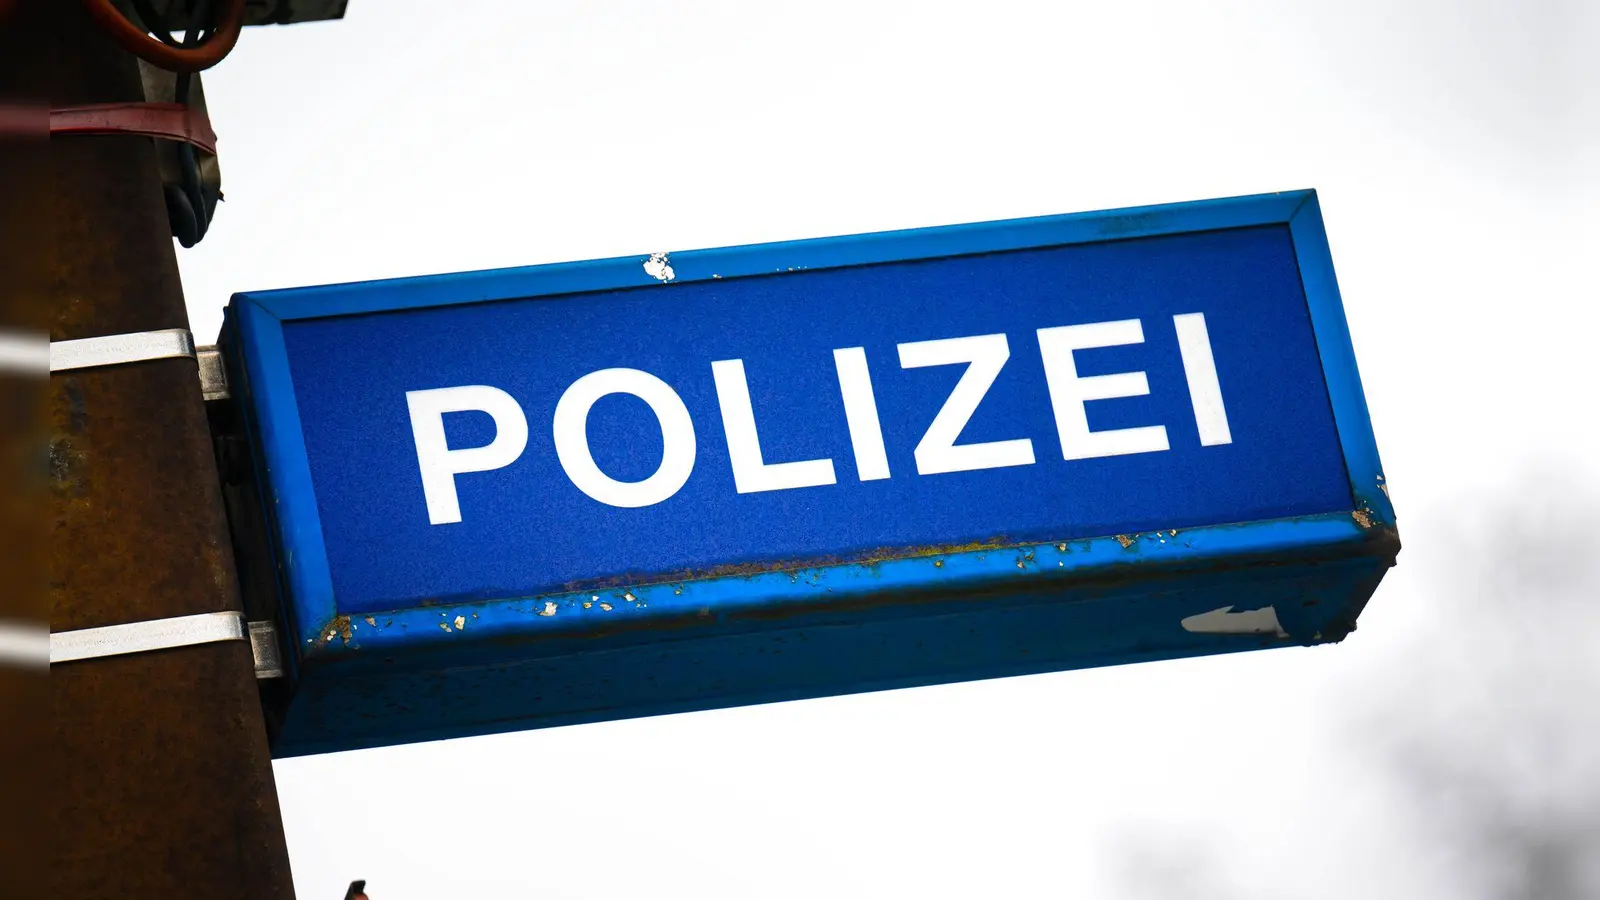 Eine beschädigte Schultoilette hat in Augsburg Teile einer Schule überflutet. Die Polizei sucht nun nach dem Täter. (Foto: Sina Schuldt/dpa)